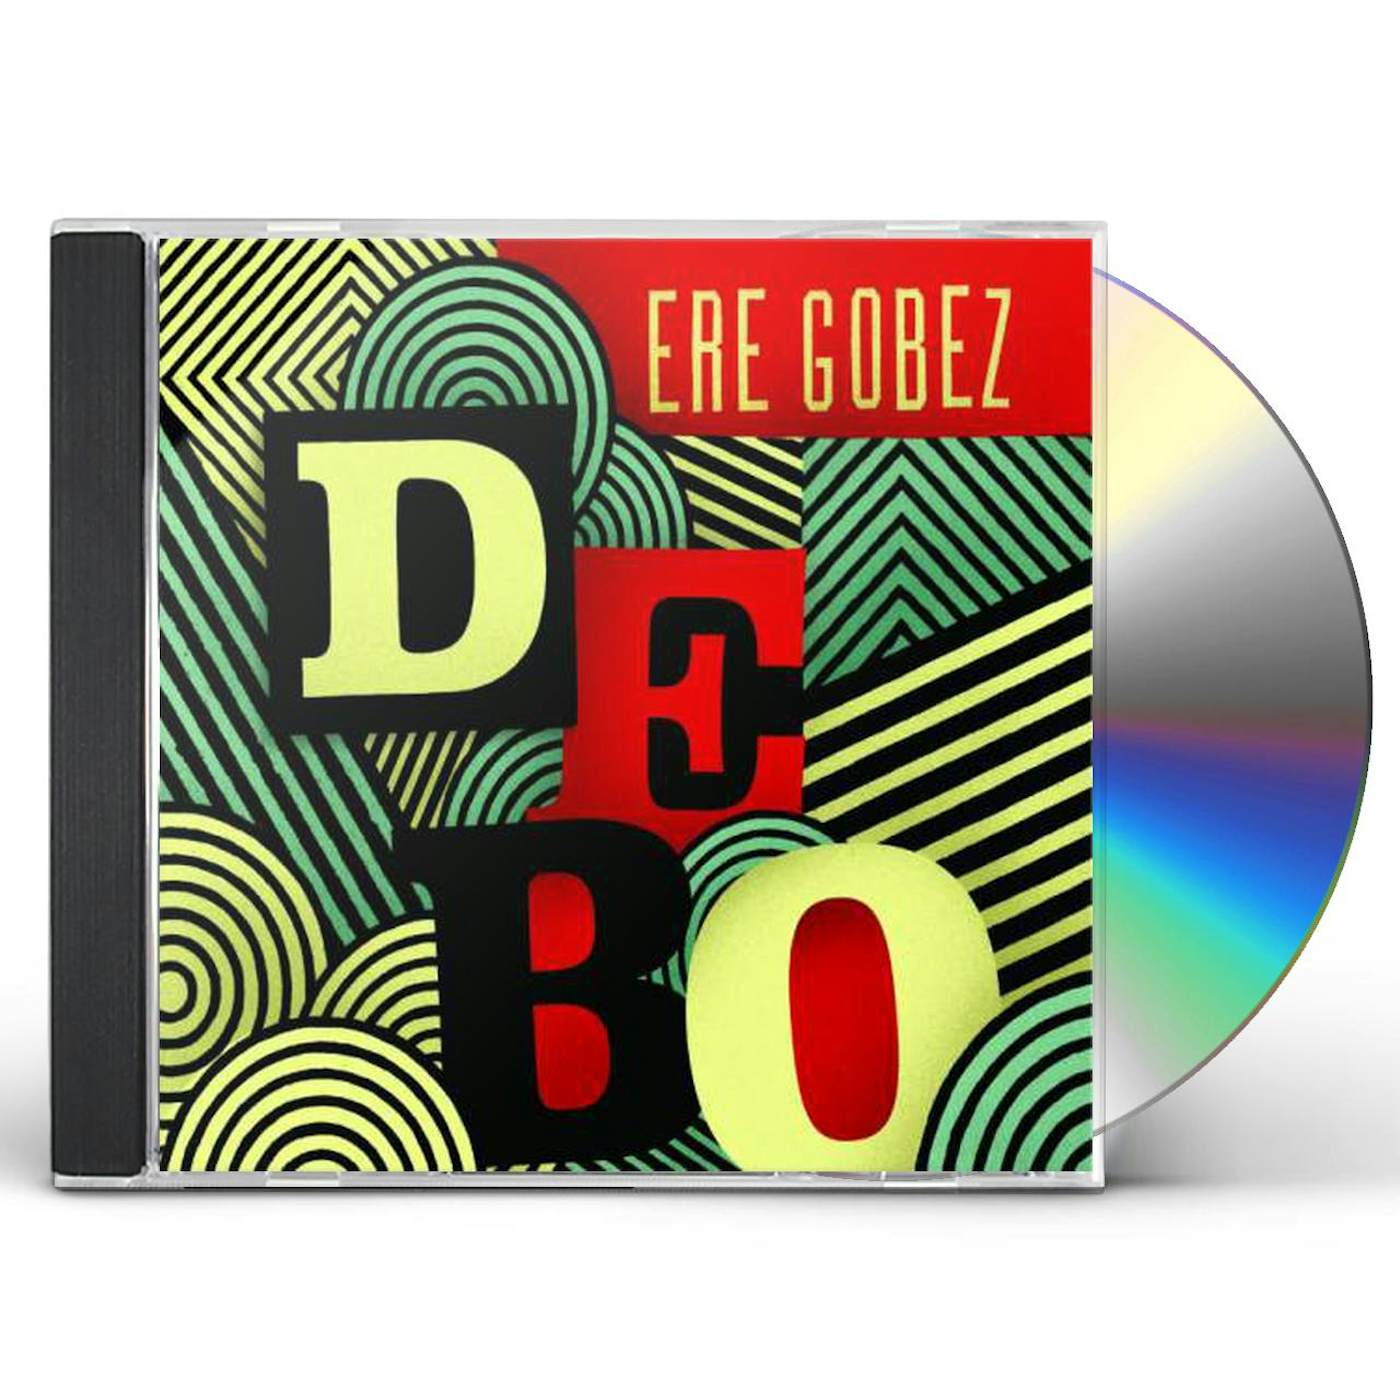 Debo Band ERE GOBEZ CD